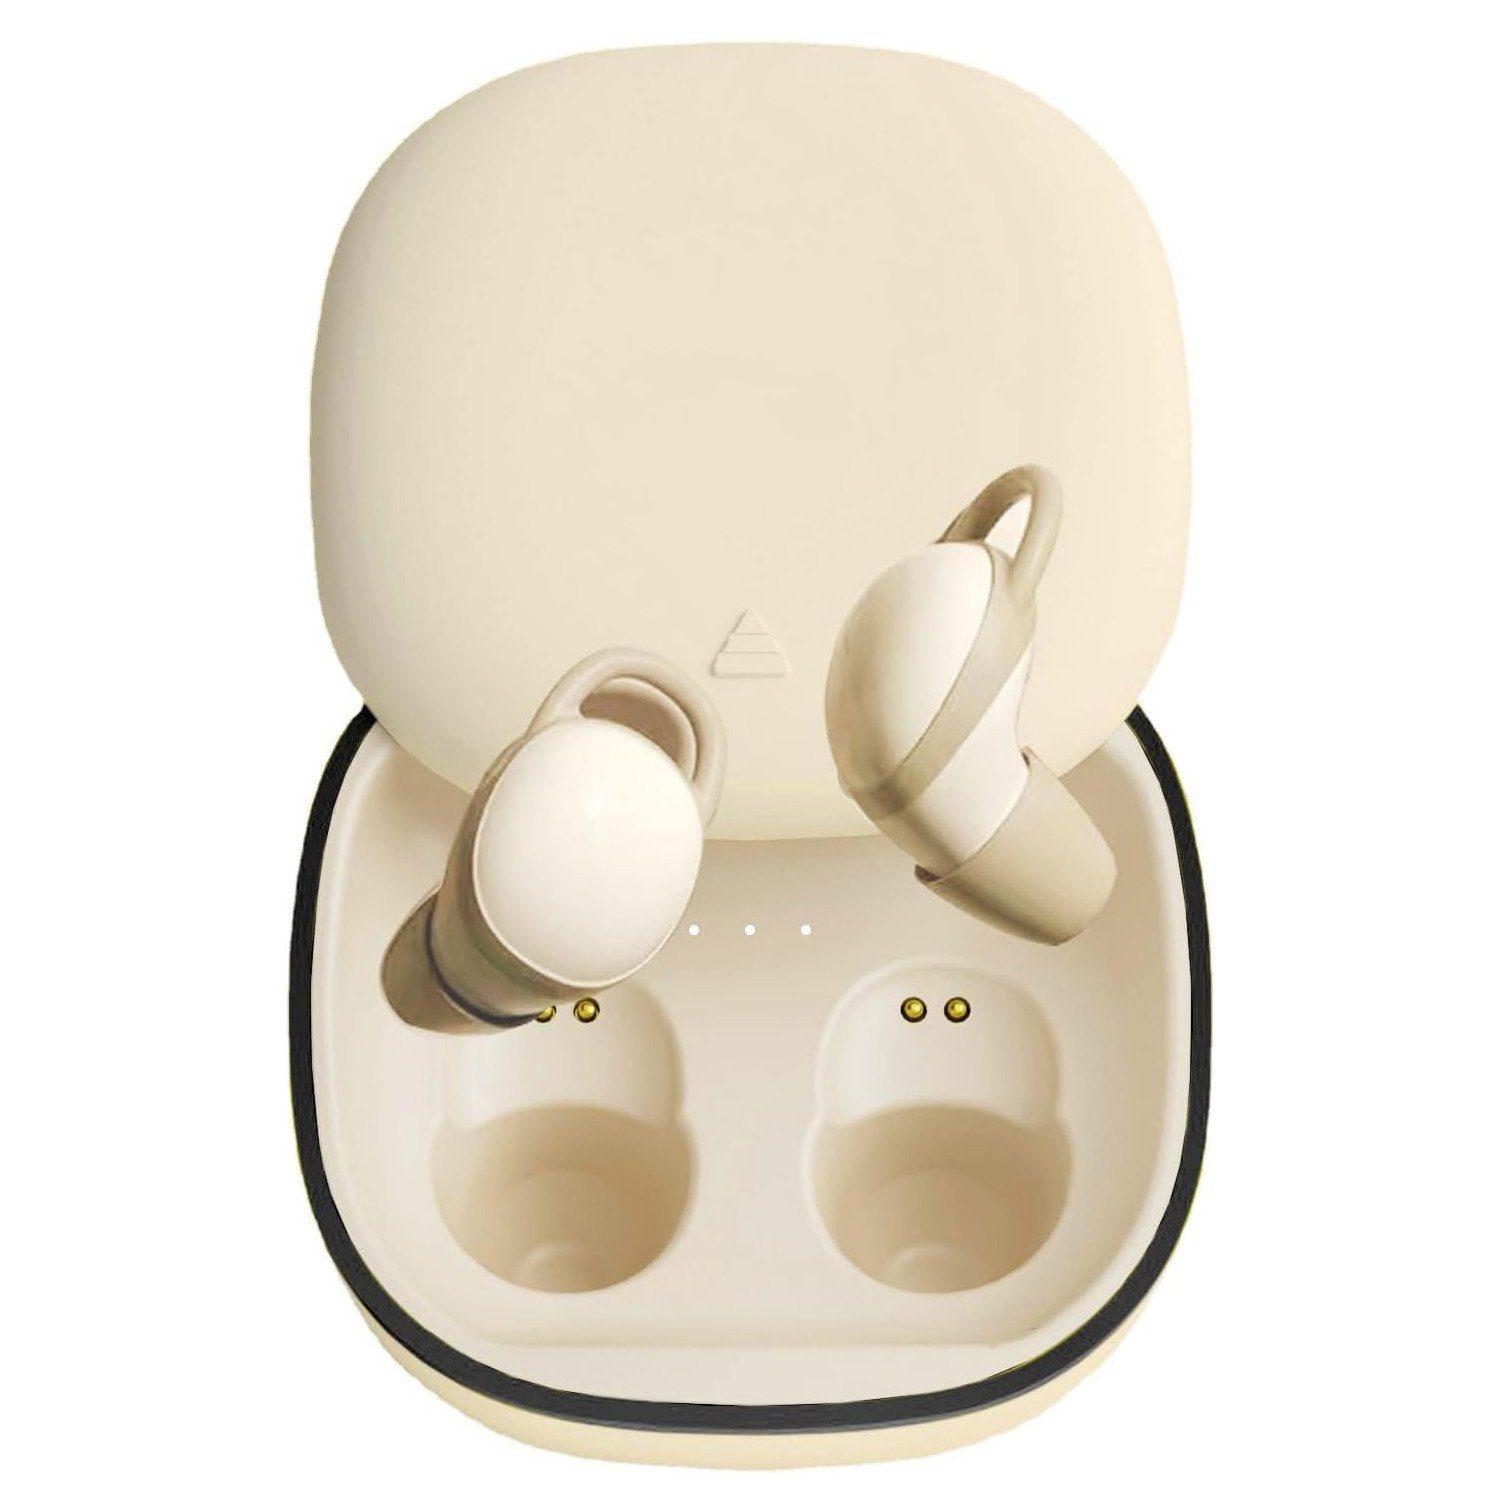 MAGICSHE Schlaf-Kopfhörer In-Ear-Kopfhörer (Geräuschreduzierung,Schnarchen unterdrücken) Beige